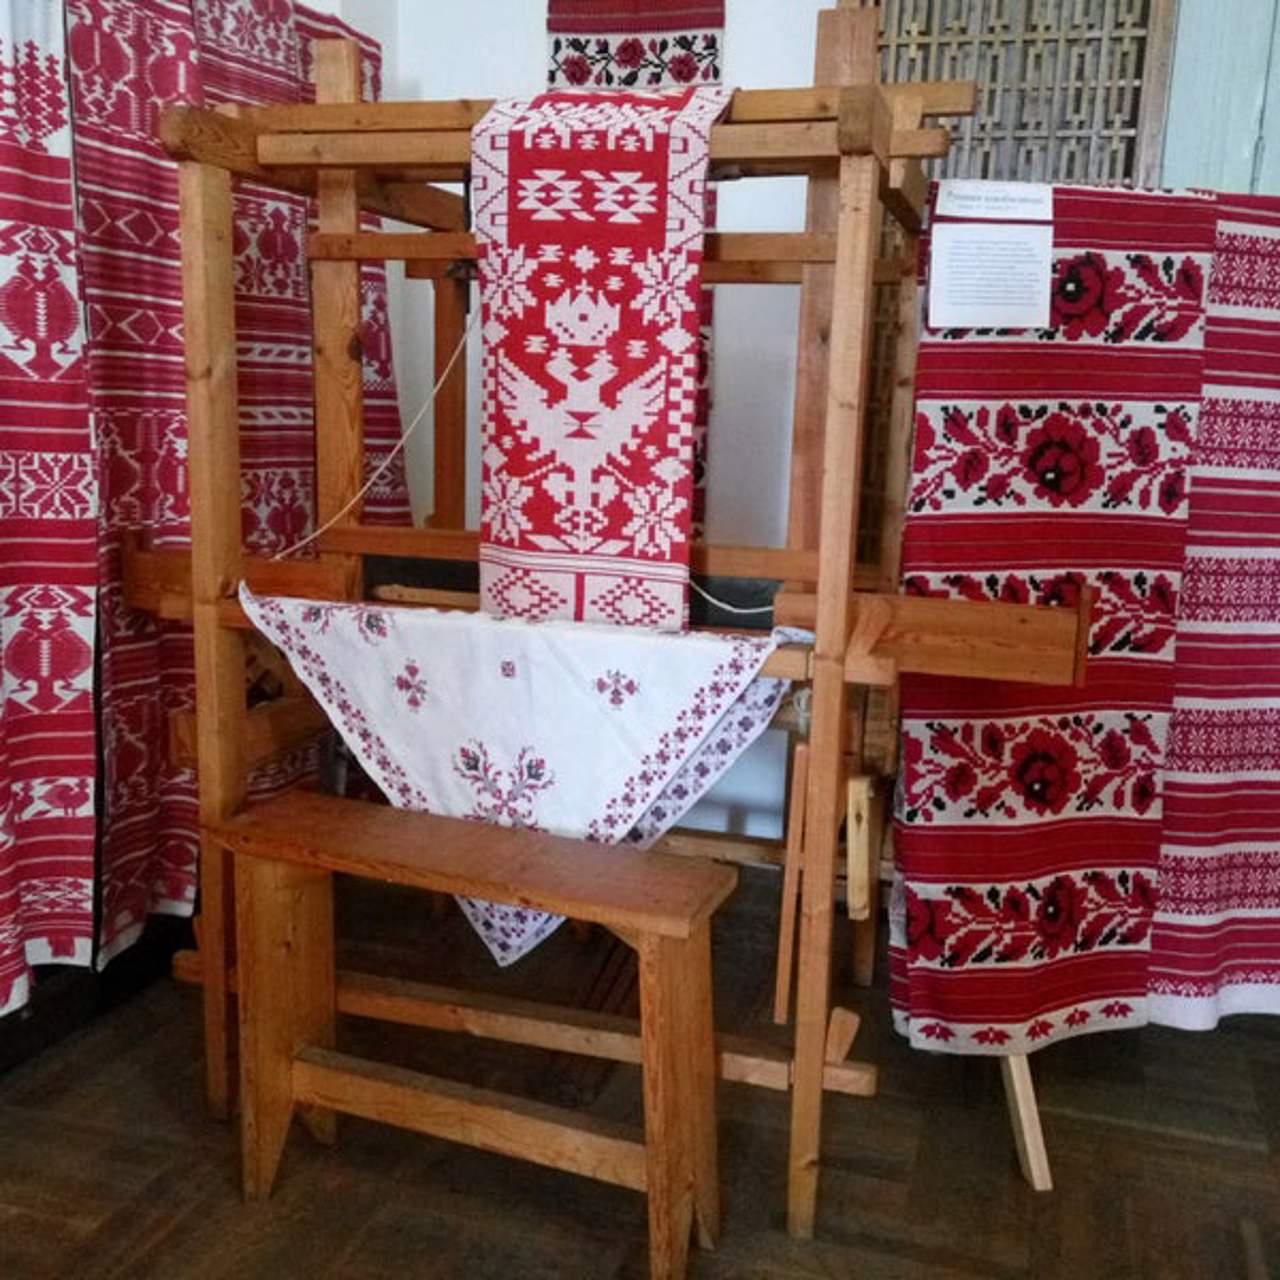 History of Weaving of Chernihiv region Museum, Kozelets